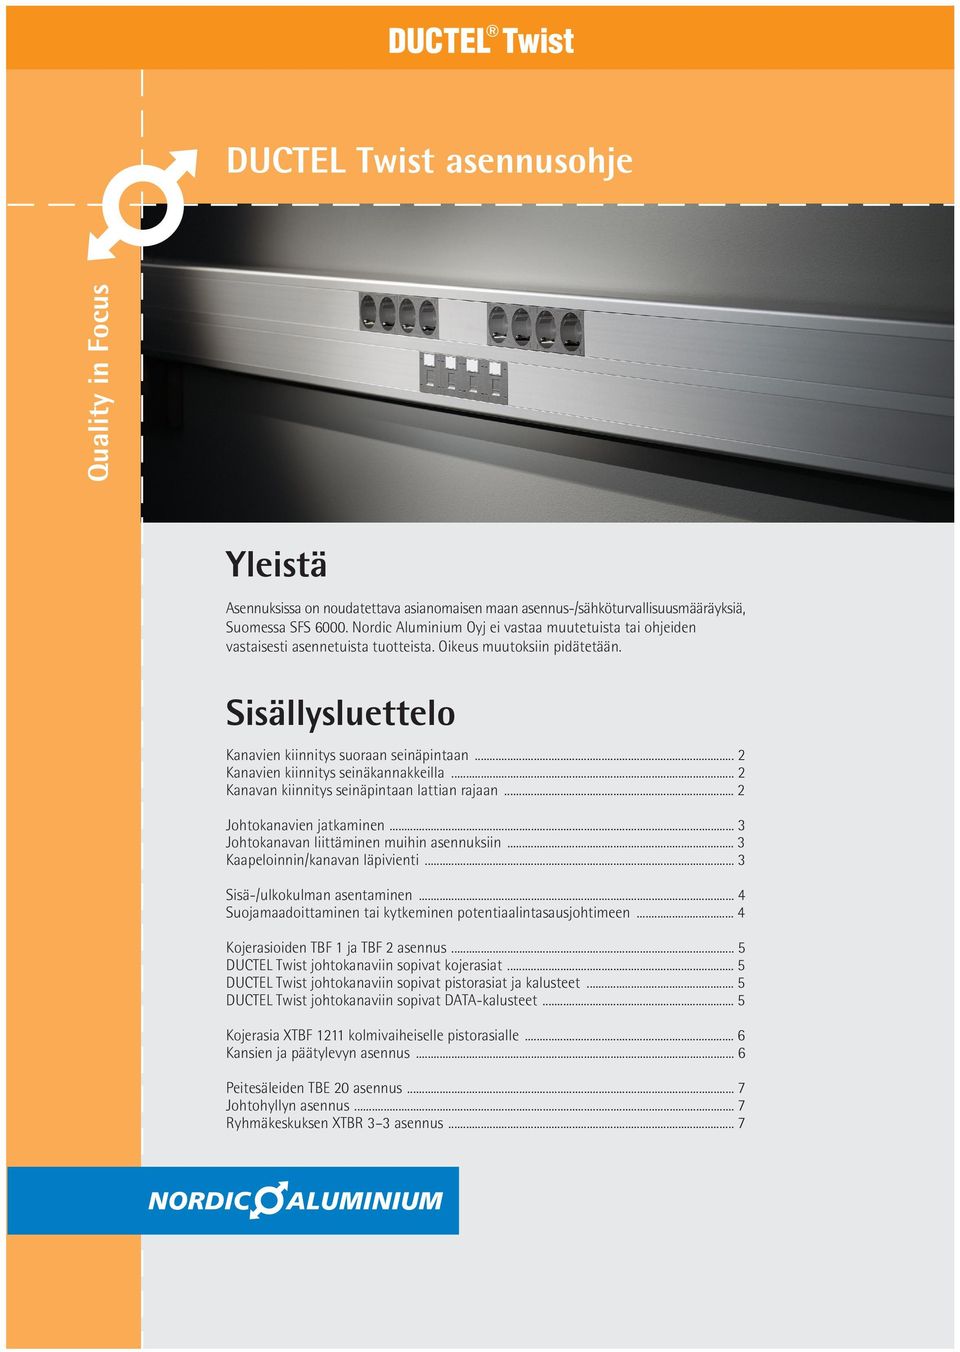 Laadunjohtamisjärjestelmä, jota Nordic Aluminium Oyj noudattaa, on hyväksytty Lloyd s Register Quality Assurancen toimesta seuraavien laadunvarmistusstrandardien mukaisesti: ISO 9001:2000, SFS-EN ISO